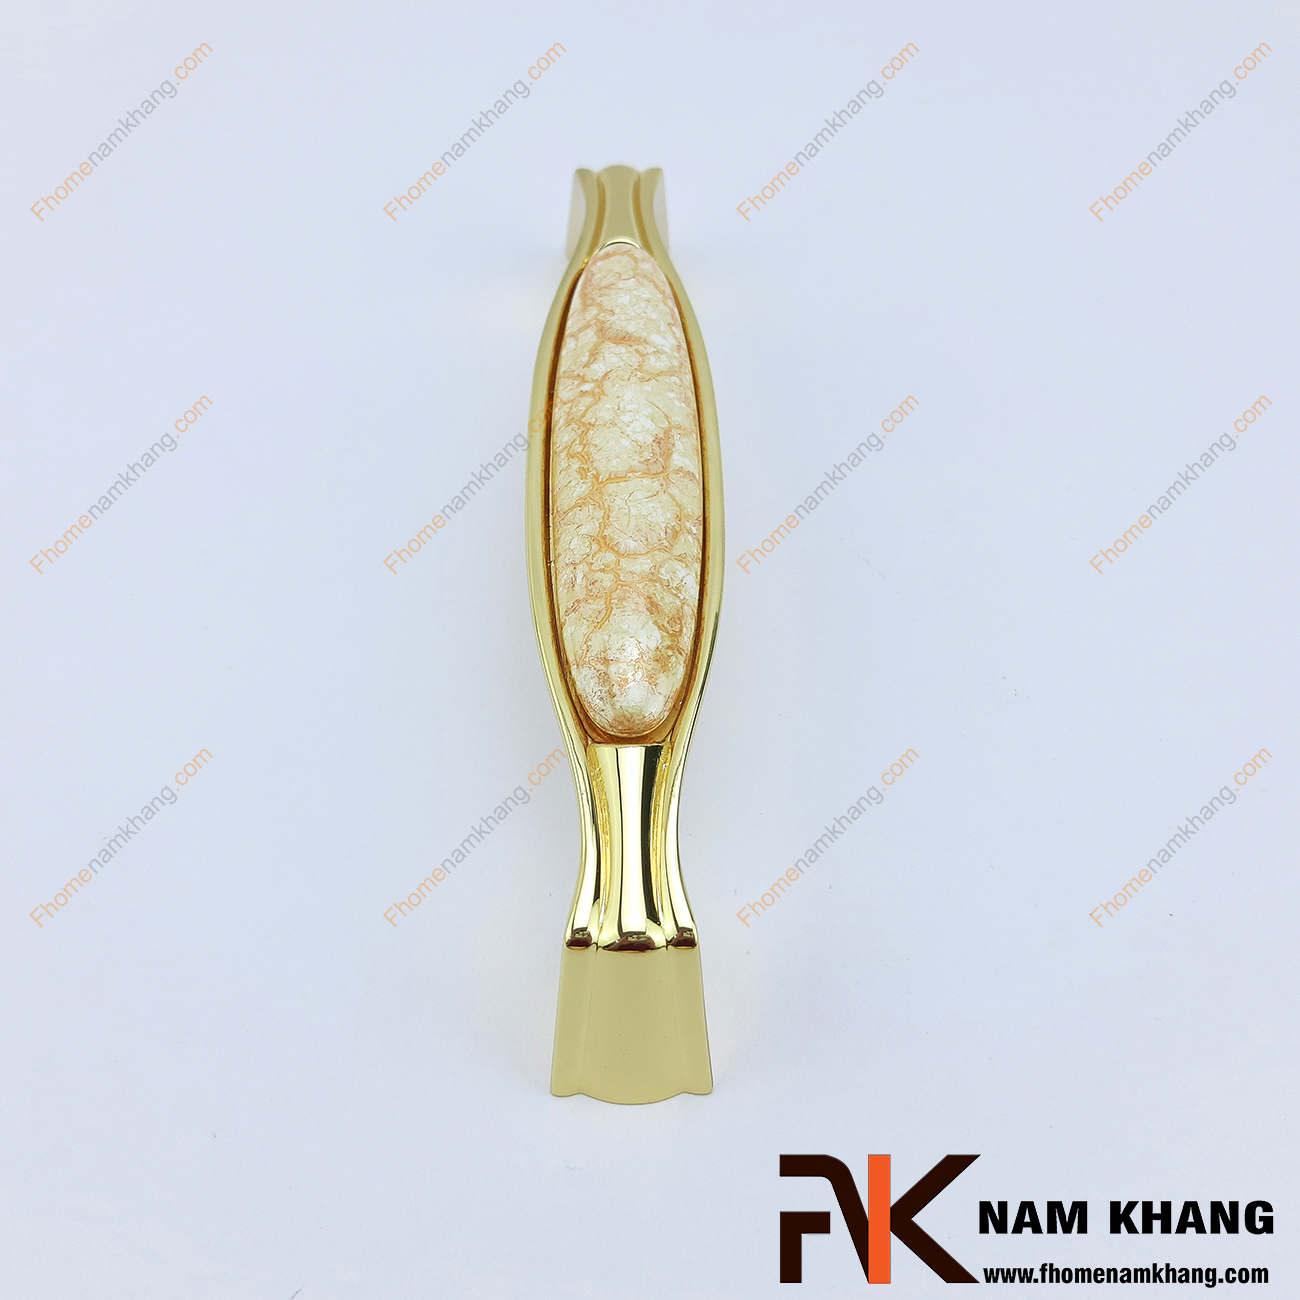 Tay nắm cửa tủ bếp sứ vân vàng mạ vàng NK038-VV là một sản phẩm đặc trung có độ thẩm mỹ cao khi kết hợp giữa sứ vân cao cấp và hợp kim chất lượng cao mạ vàng bóng.